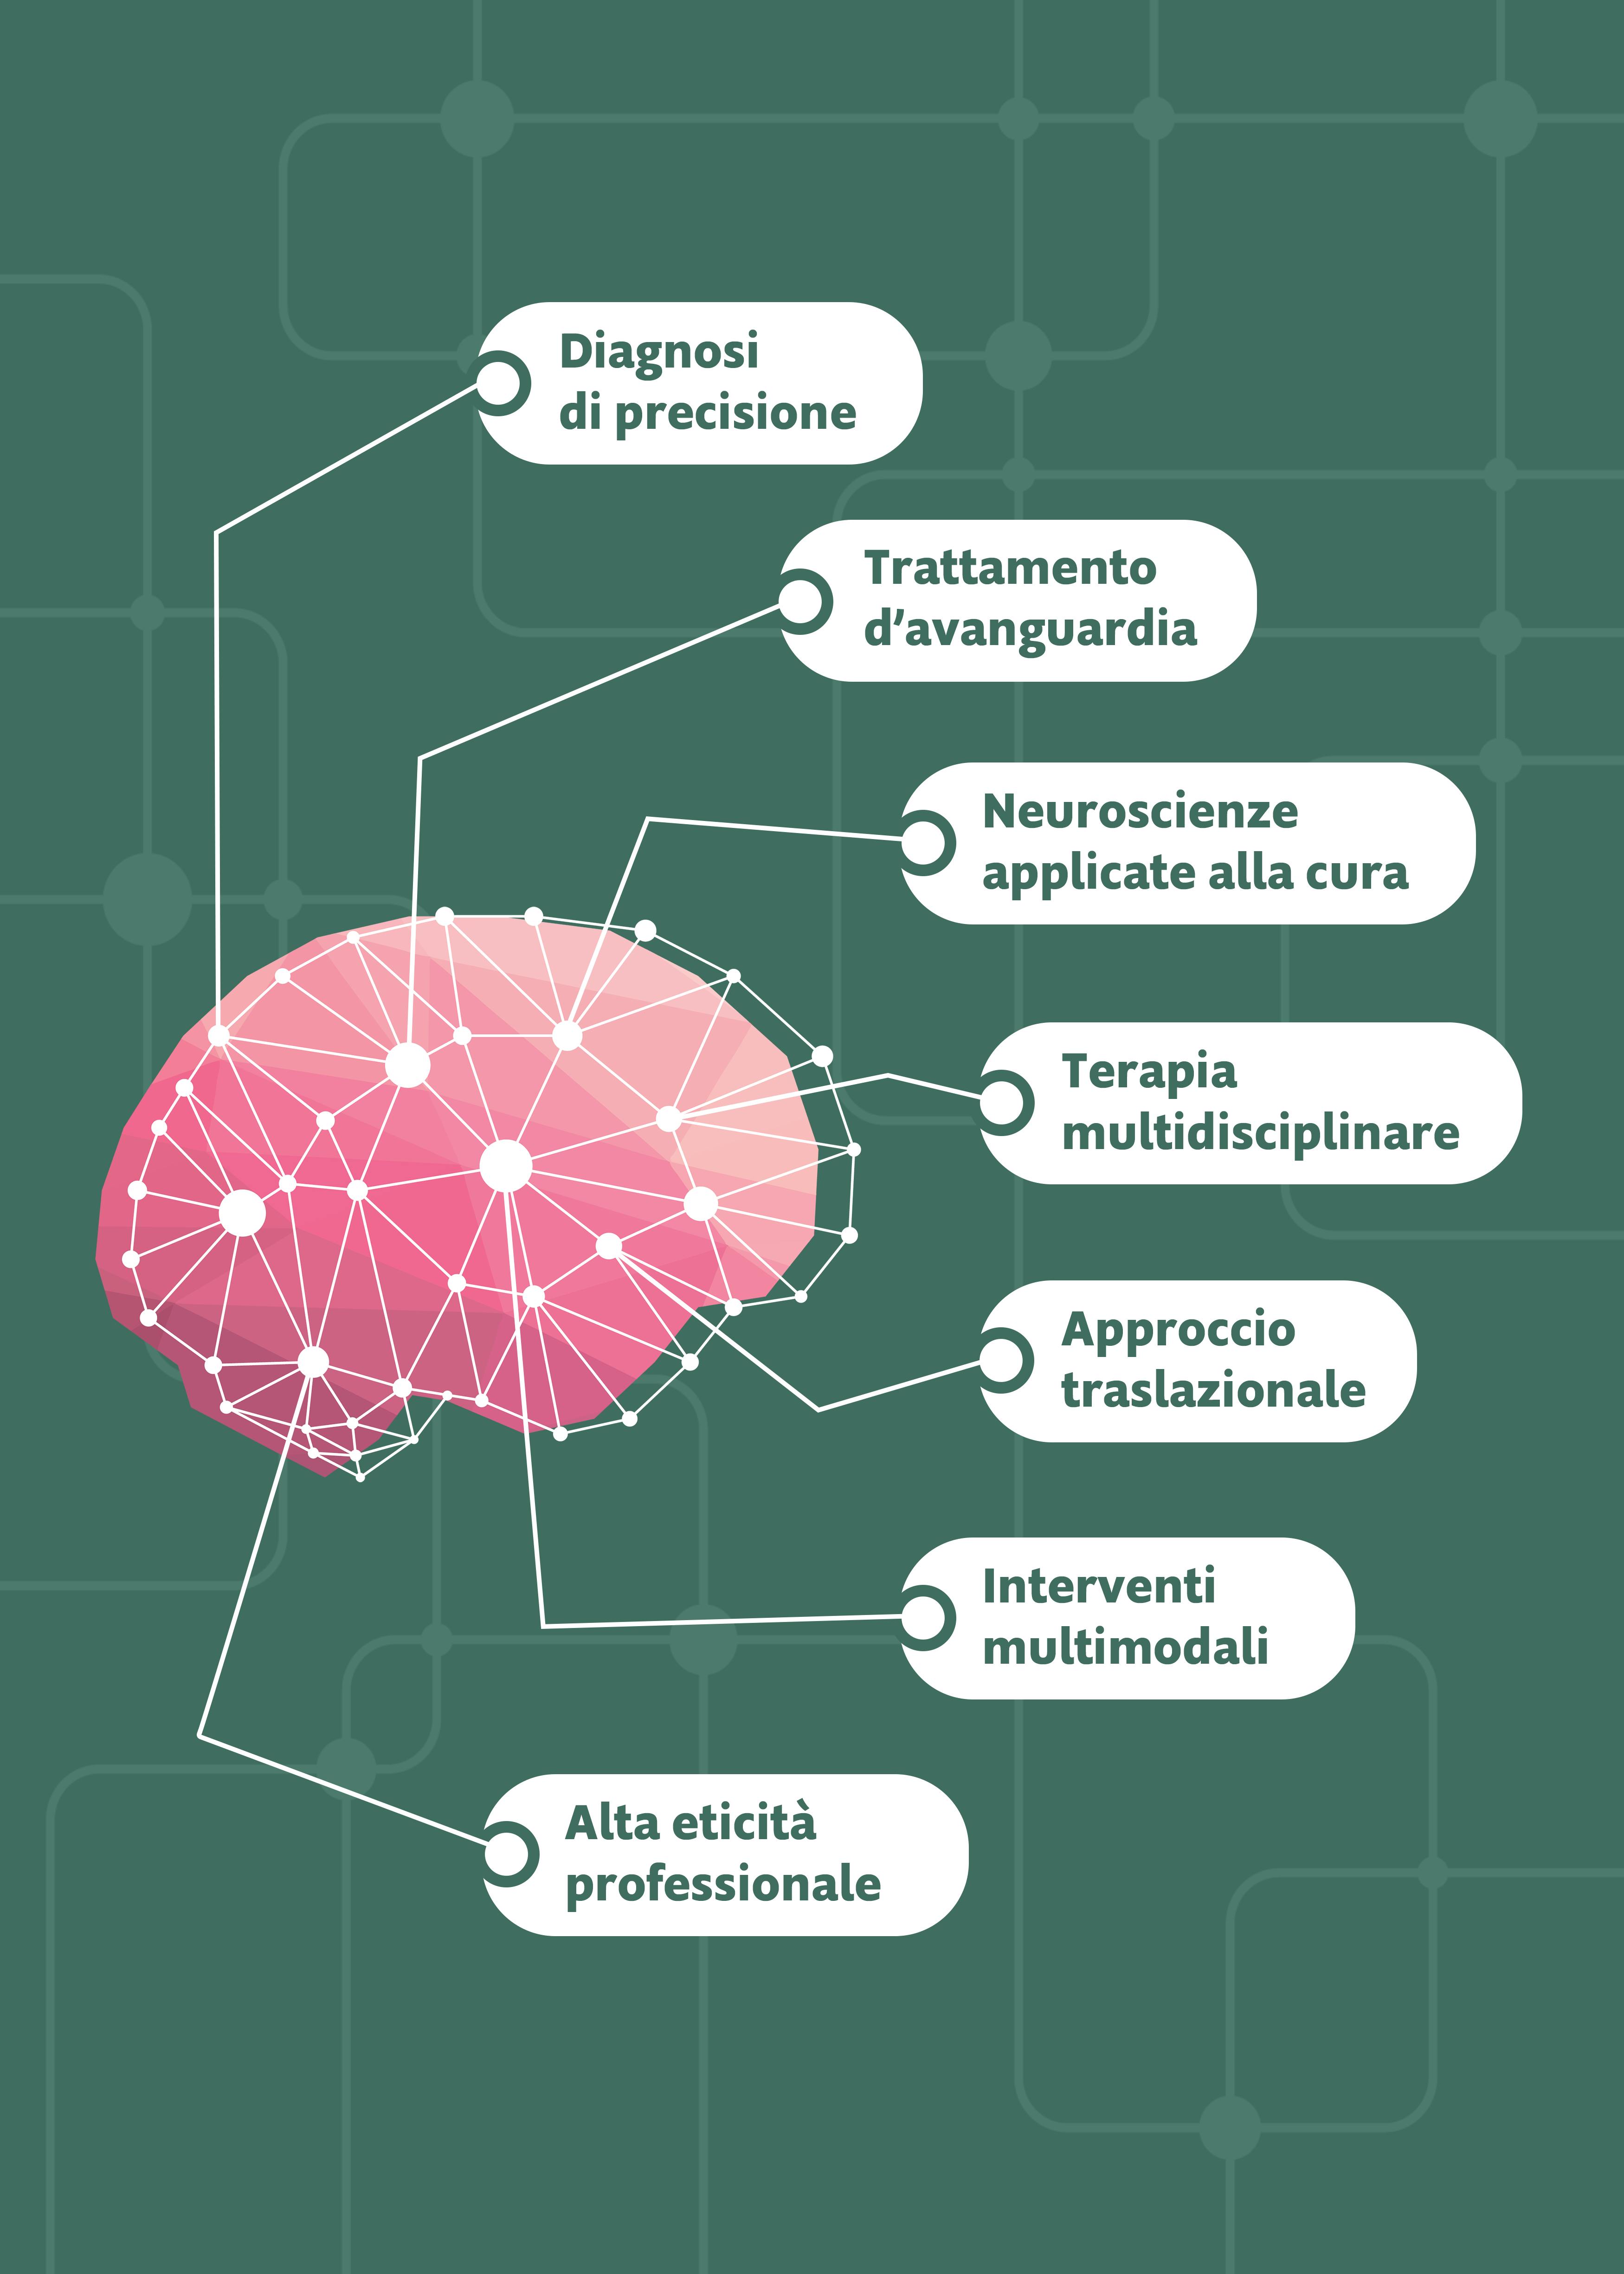 Cervello rosa su sfondo verde con connessioni che lo connettono a sette box bianchi con le seguenti scritte: "Diagnosi di precisione", "Trattamento d'avanguardia", "Neuroscienze applicate alla cura", "Terapia multidisciplinare", "Approccio traslazionale", "Interventi multimodali", "Alta eticità professionale".